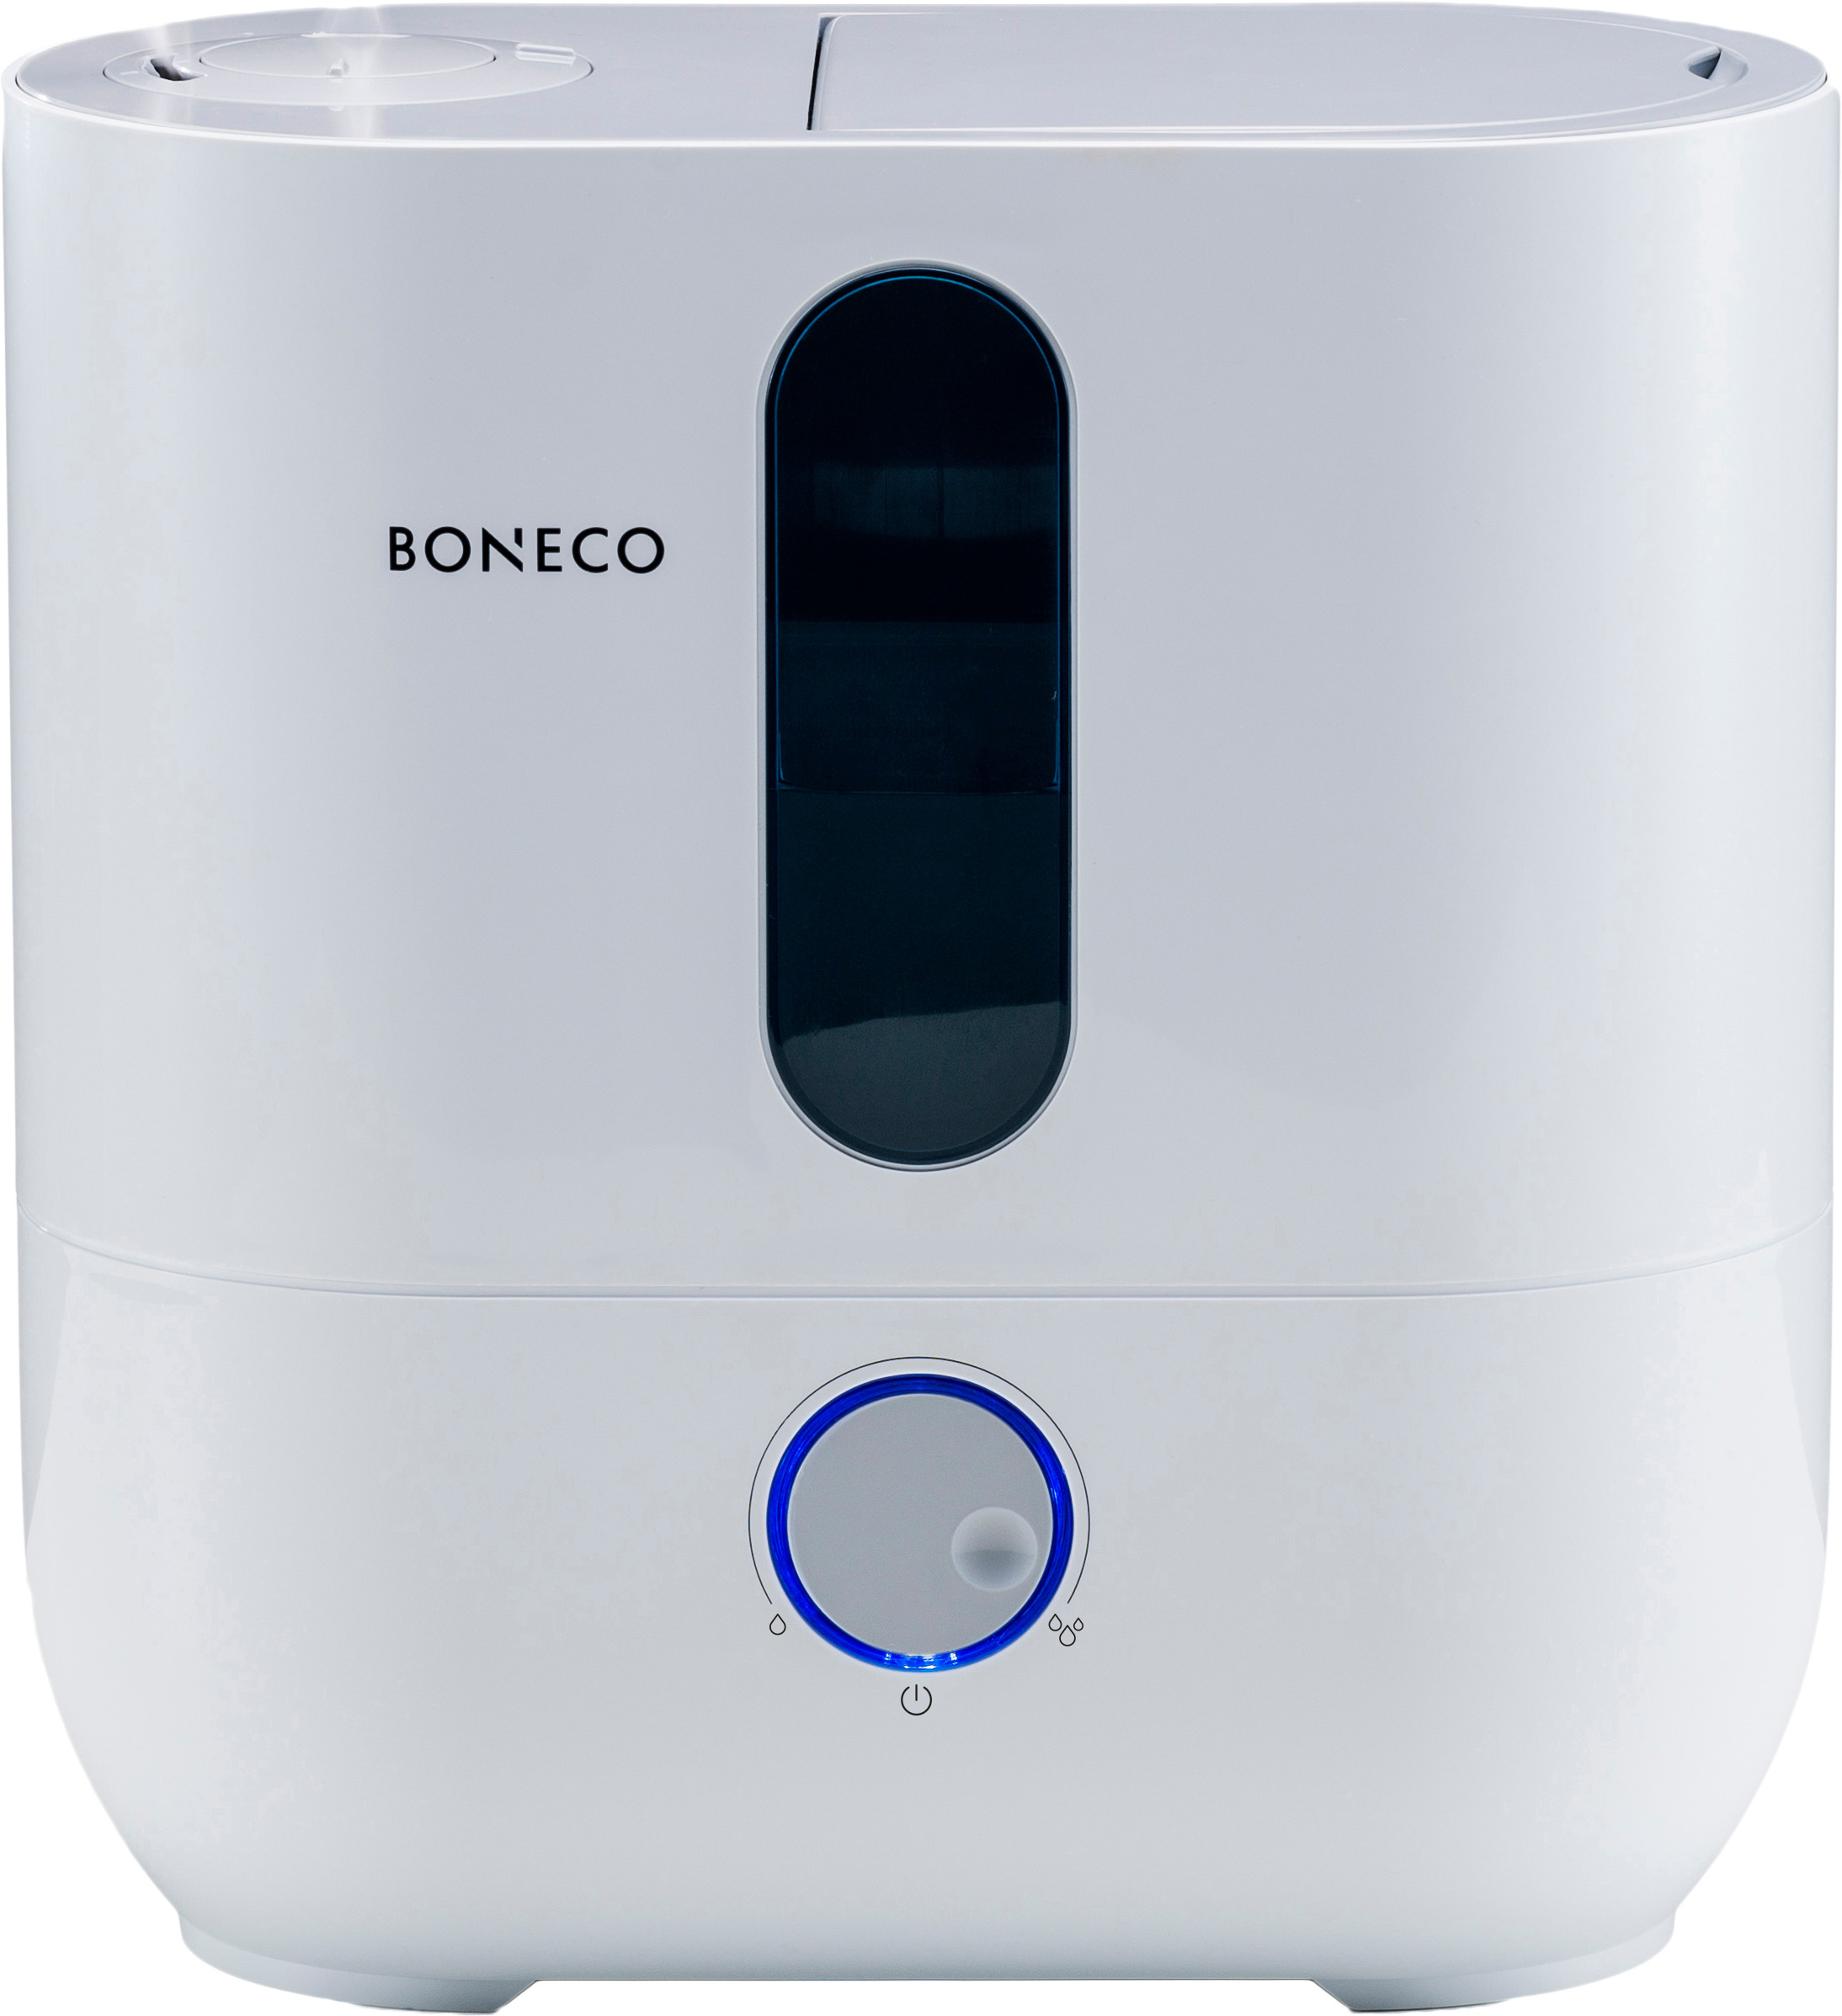 (27 50 U300 m²) Weiß BONECO Luftbefeuchter Watt, Raumgröße: